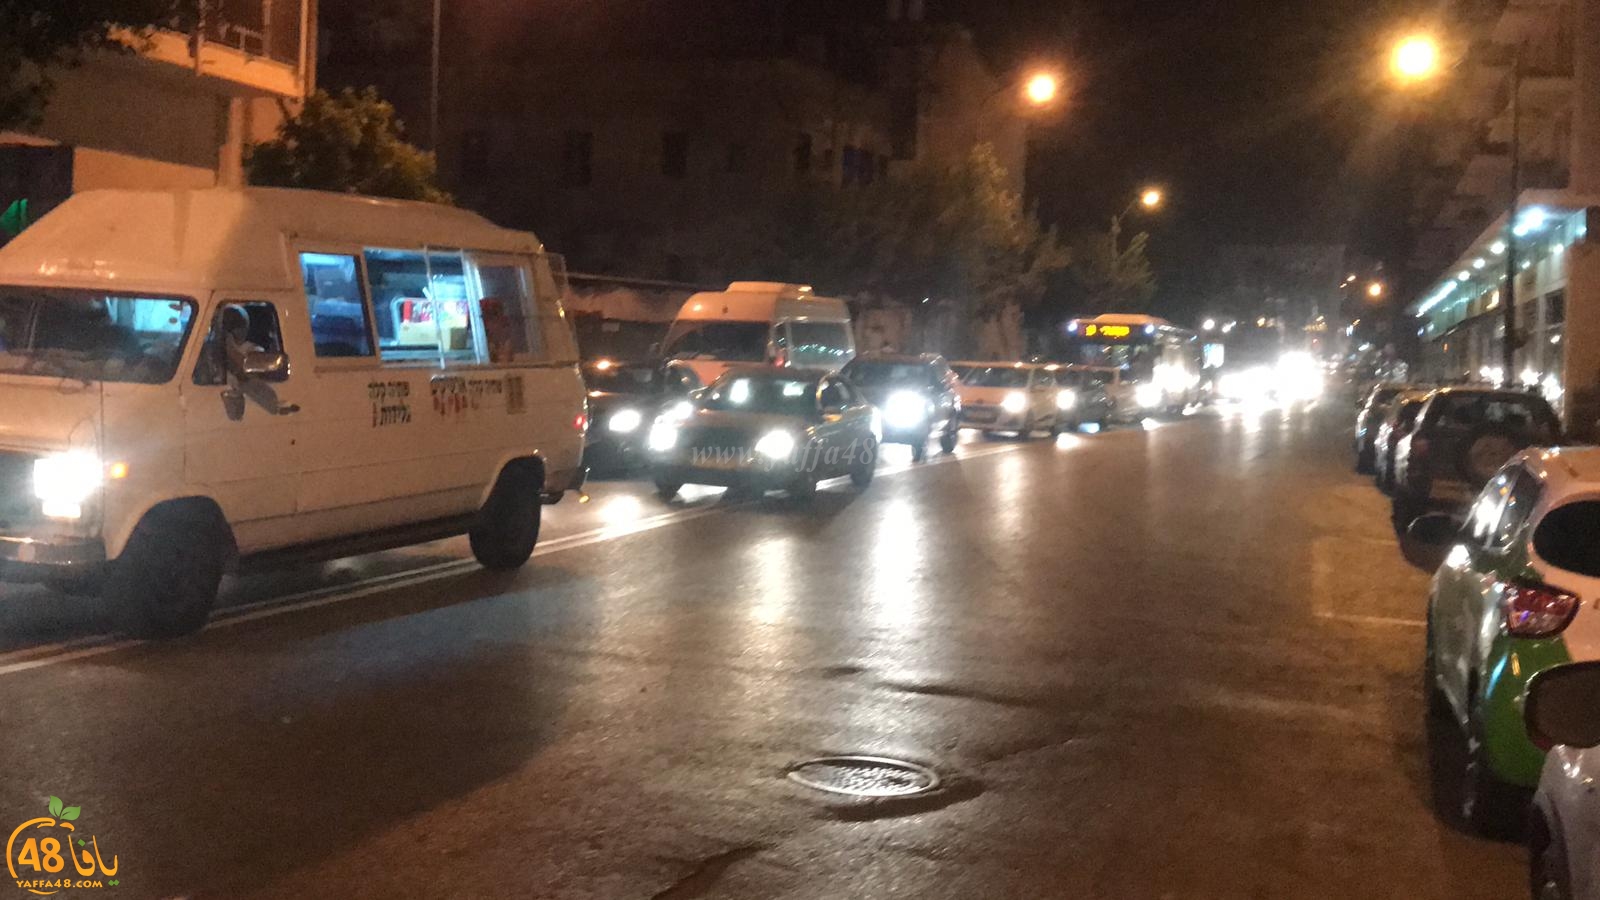  بالفيديو: أزمات مرورية خانقة بيافا اثر اغلاق شارع شديروت يروشلايم 